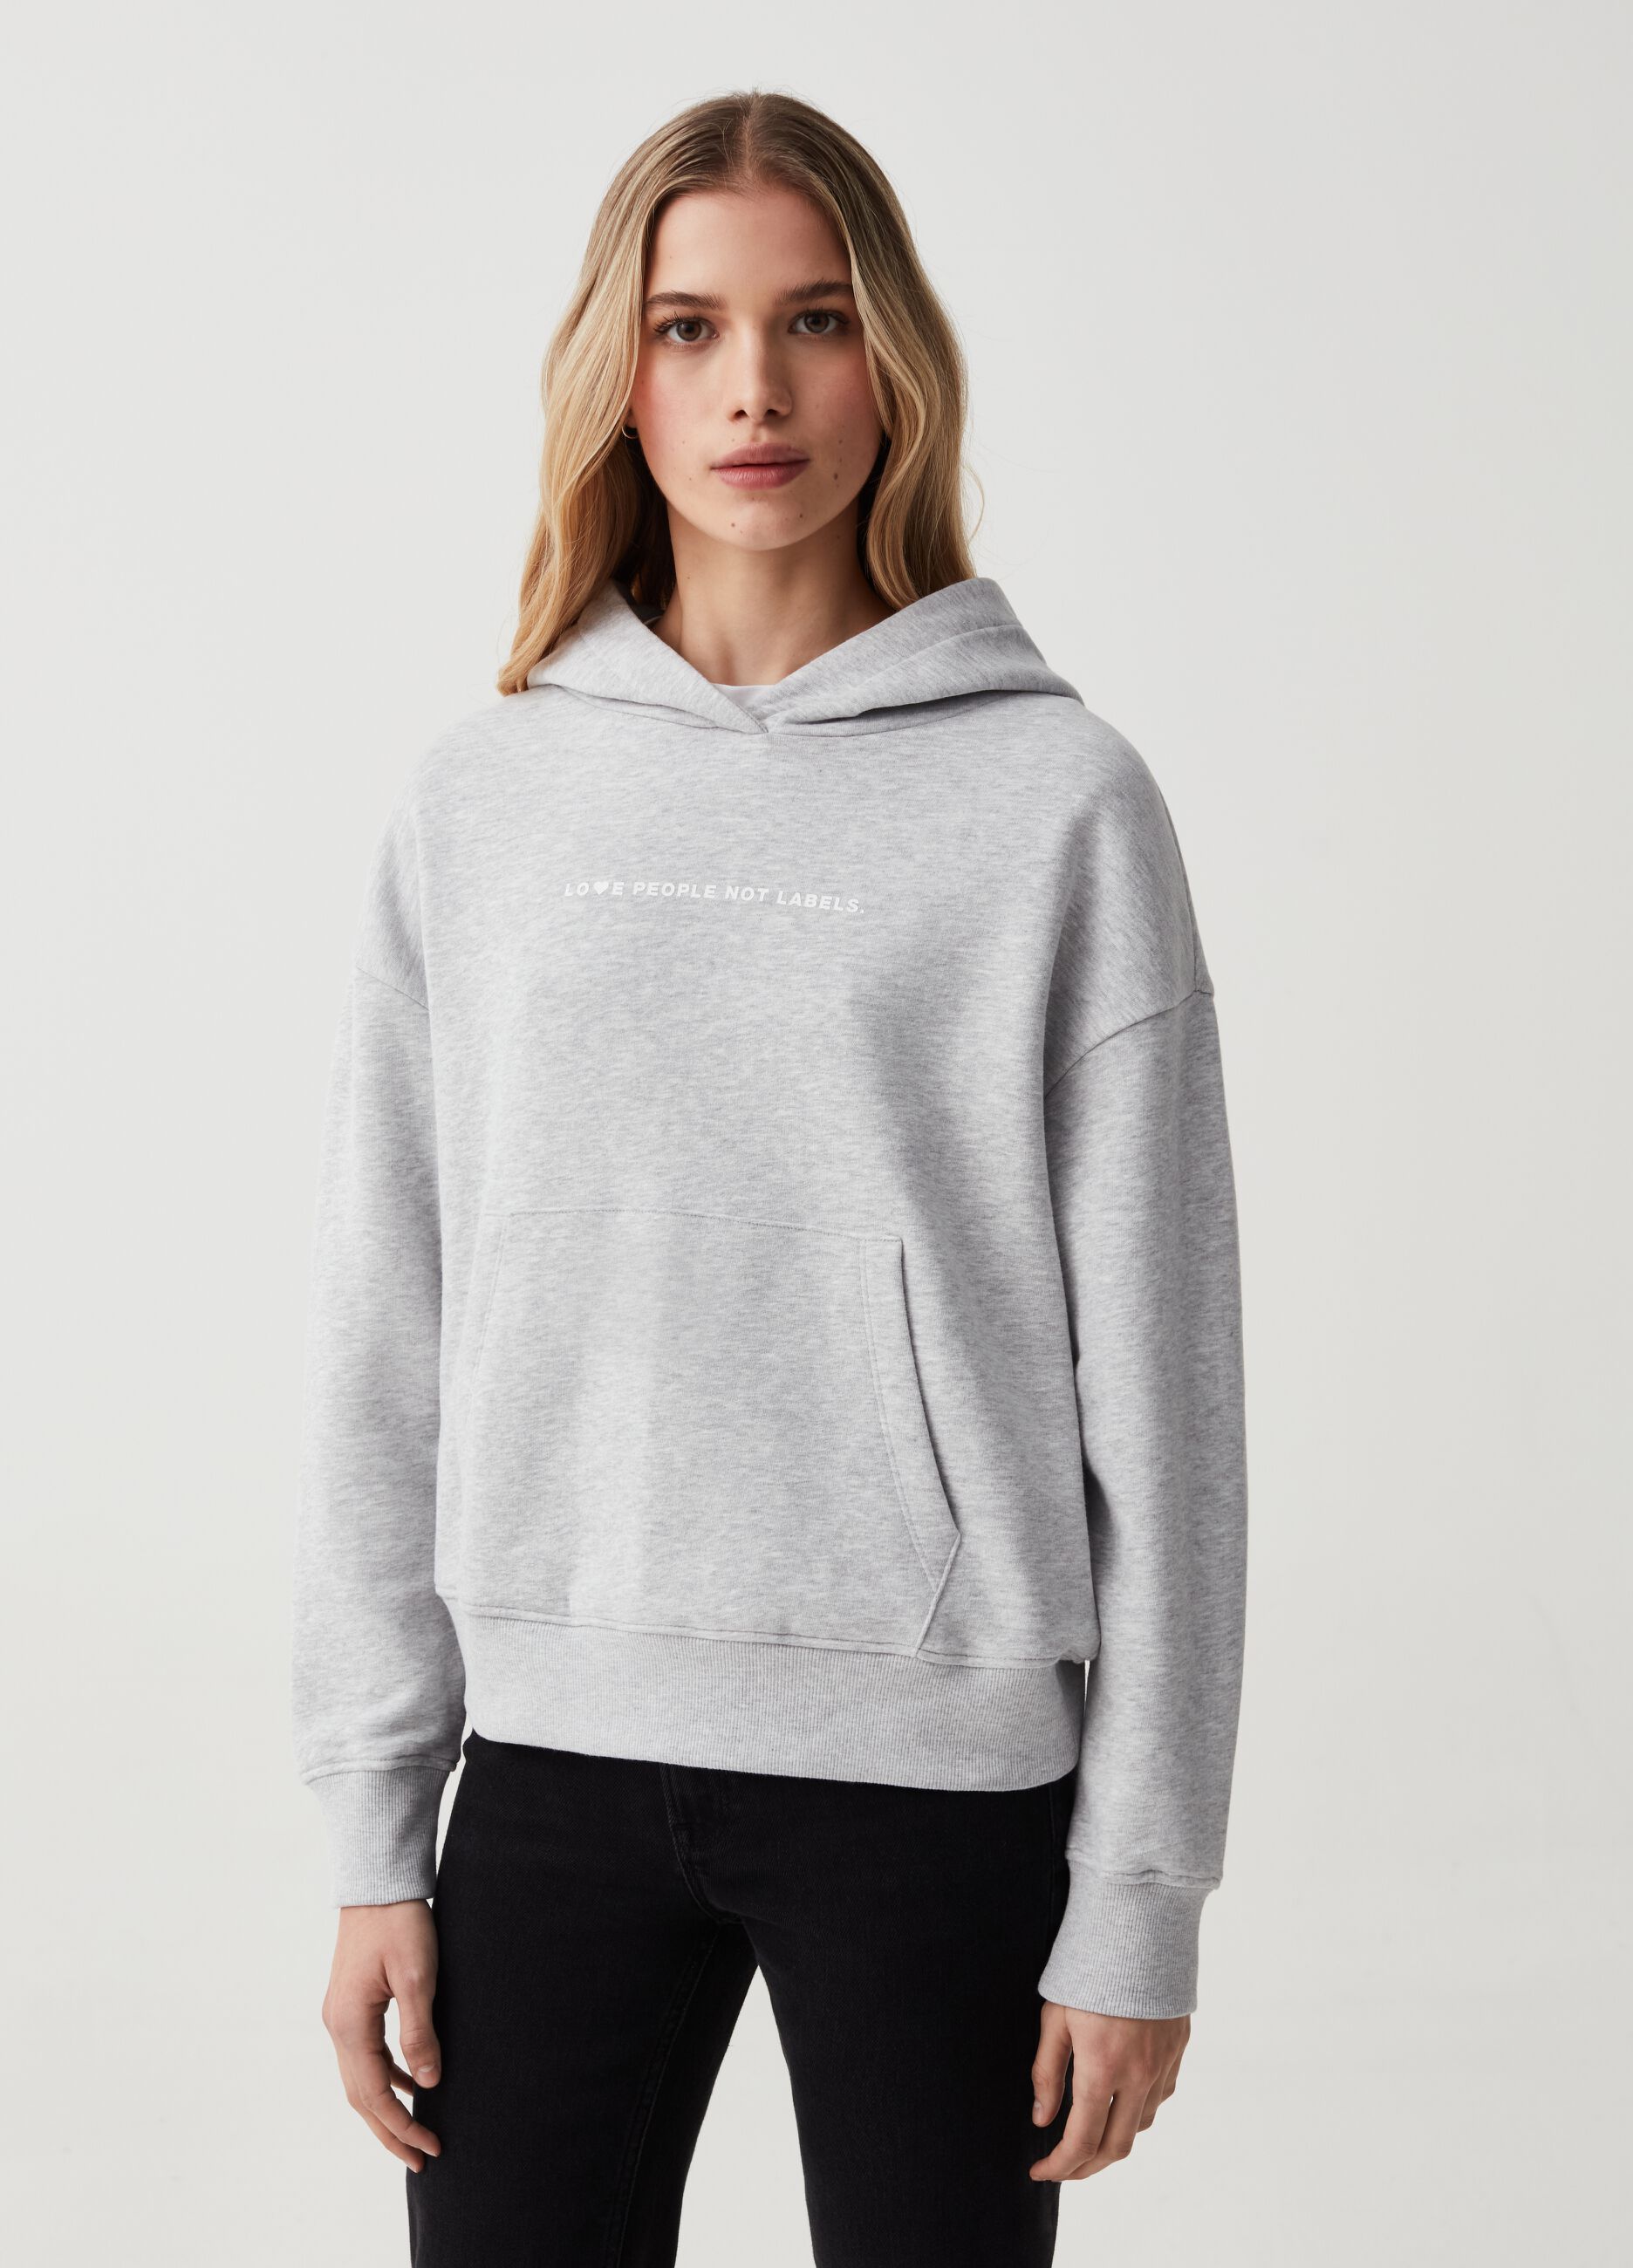 Sweatshirt with hood and print